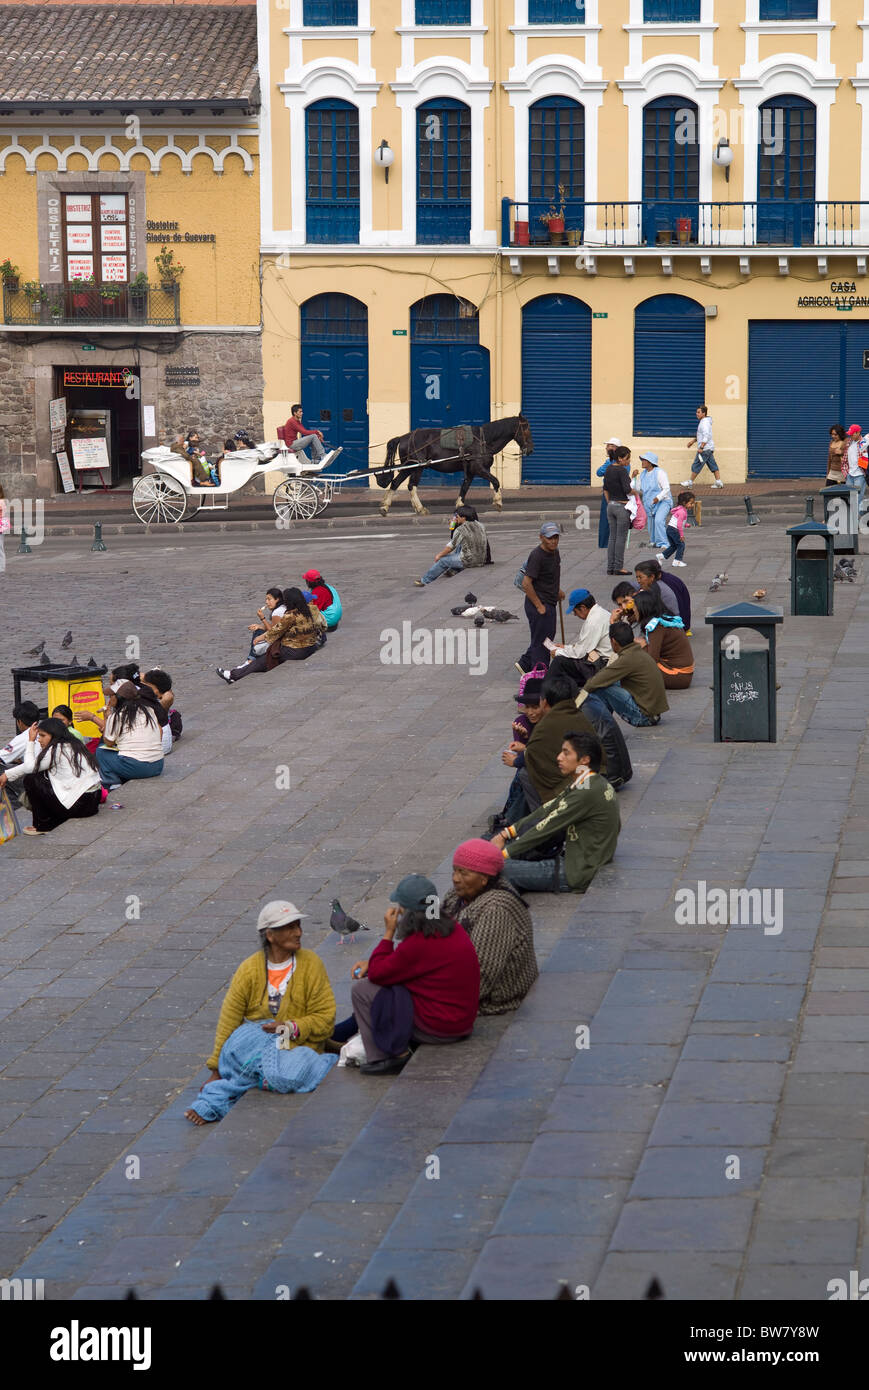 Plaza San Francisco, people relaxing, Quito, Ecuador Stock Photo